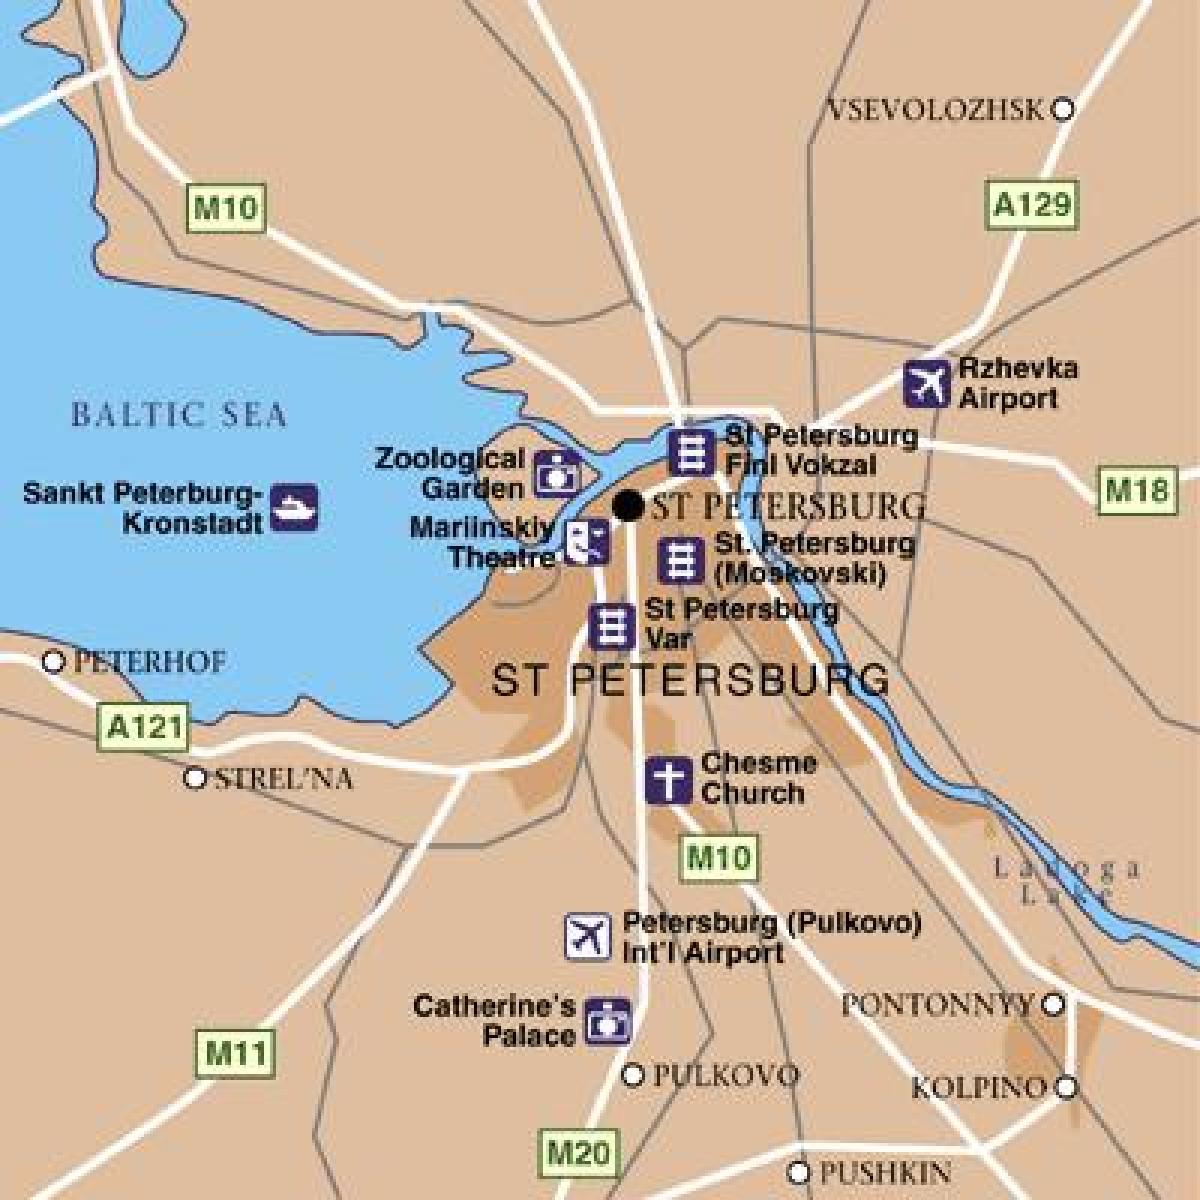 Karte der St. Petersburger Flughäfen